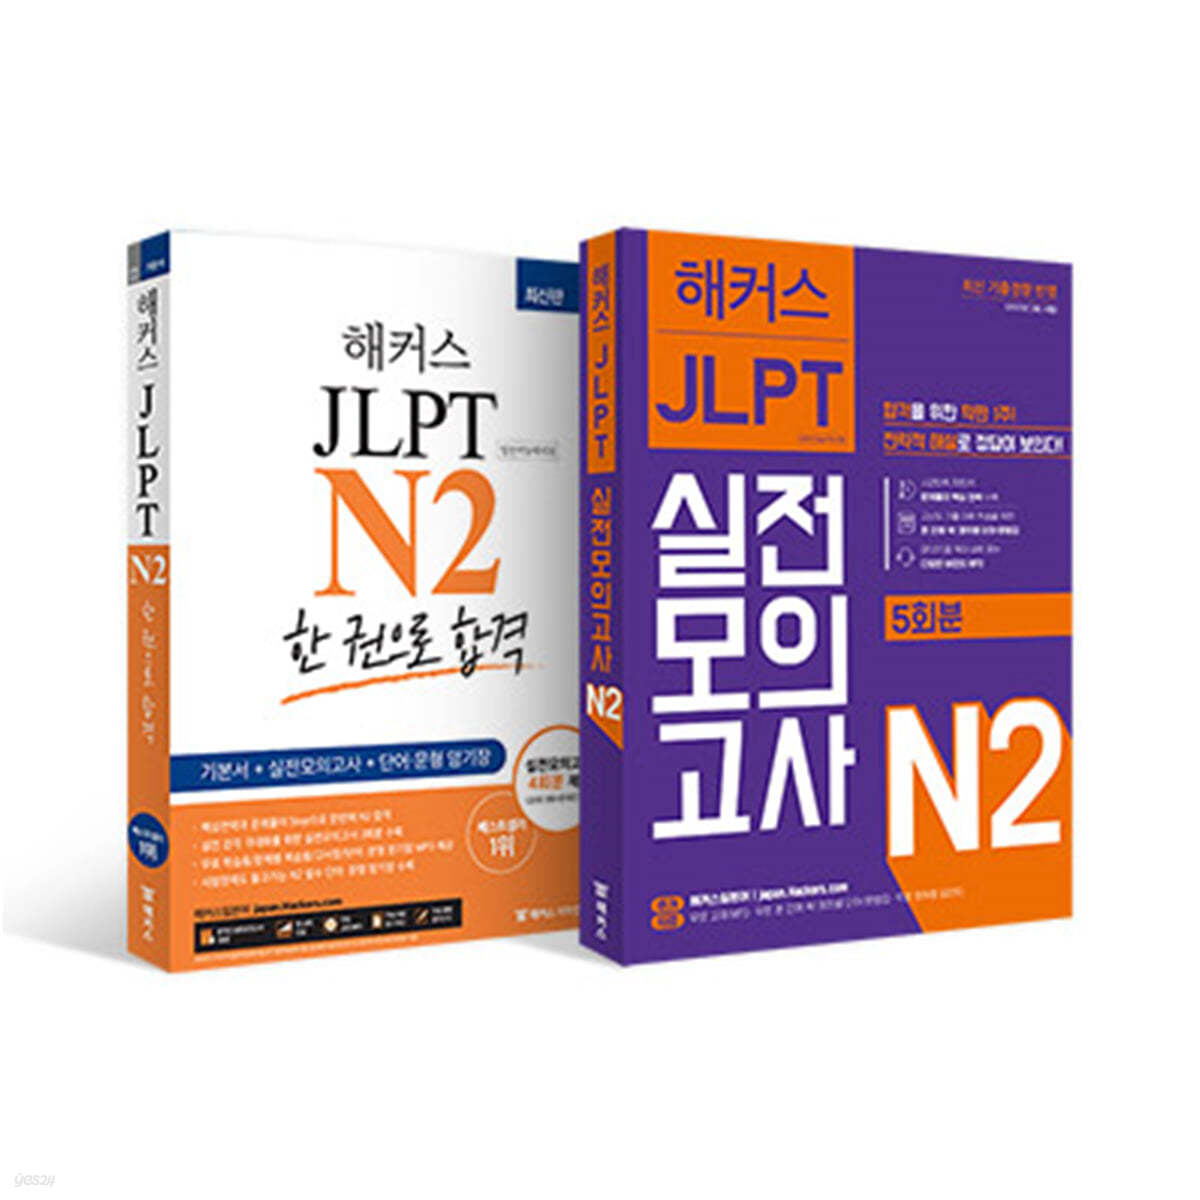 해커스일본어 JLPT 일본어능력시험 N2 기본서 + 모의고사 + 실전완성세트